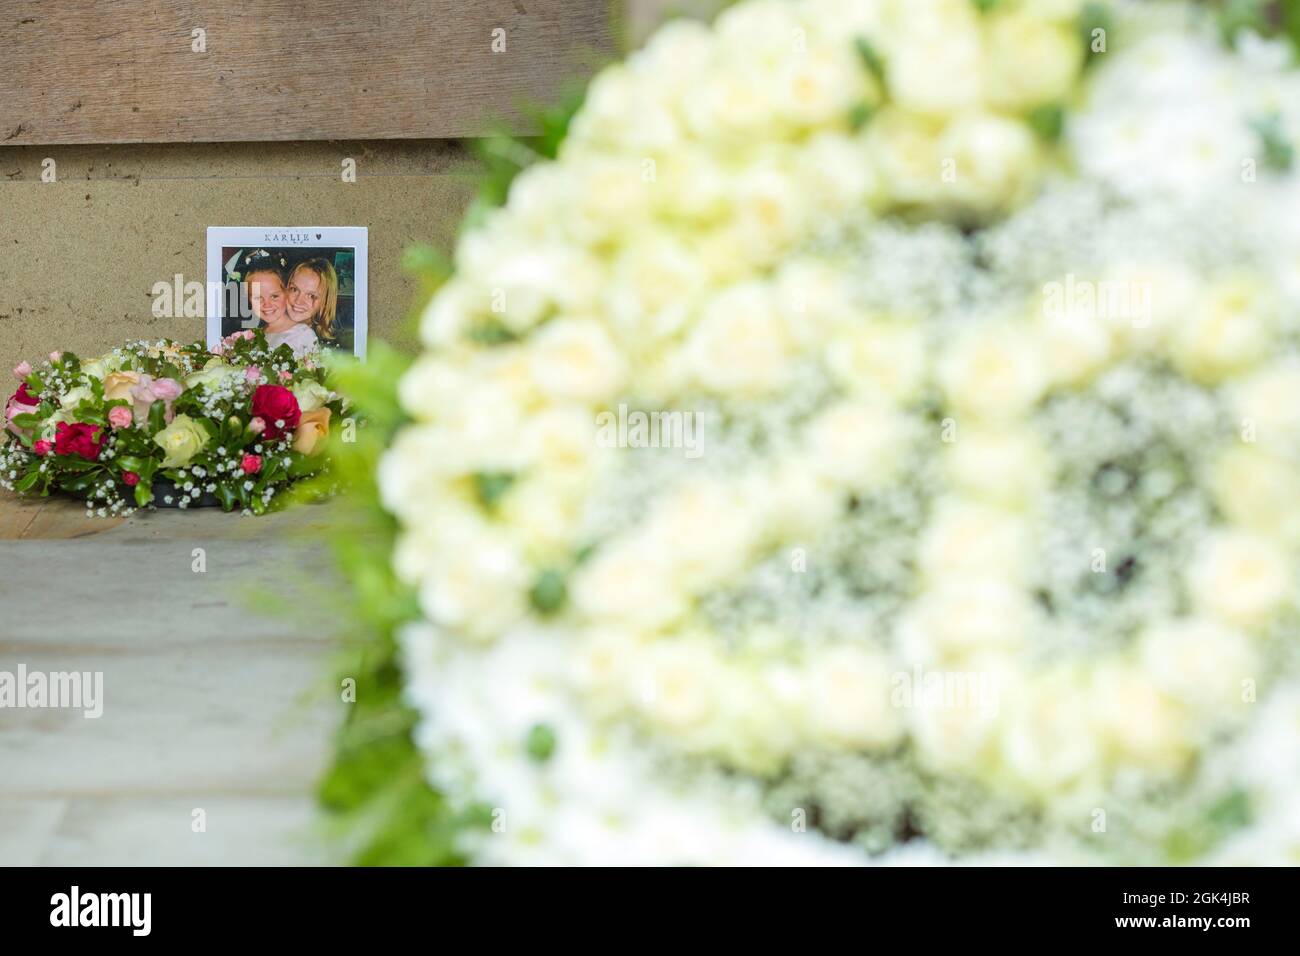 La gente visita un memoriale alle vittime dei 9/11 attentati terroristici di Grosvenor Square, Londra, in occasione del 20° anniversario degli attentati, il 11 settembre 2020 Foto Stock